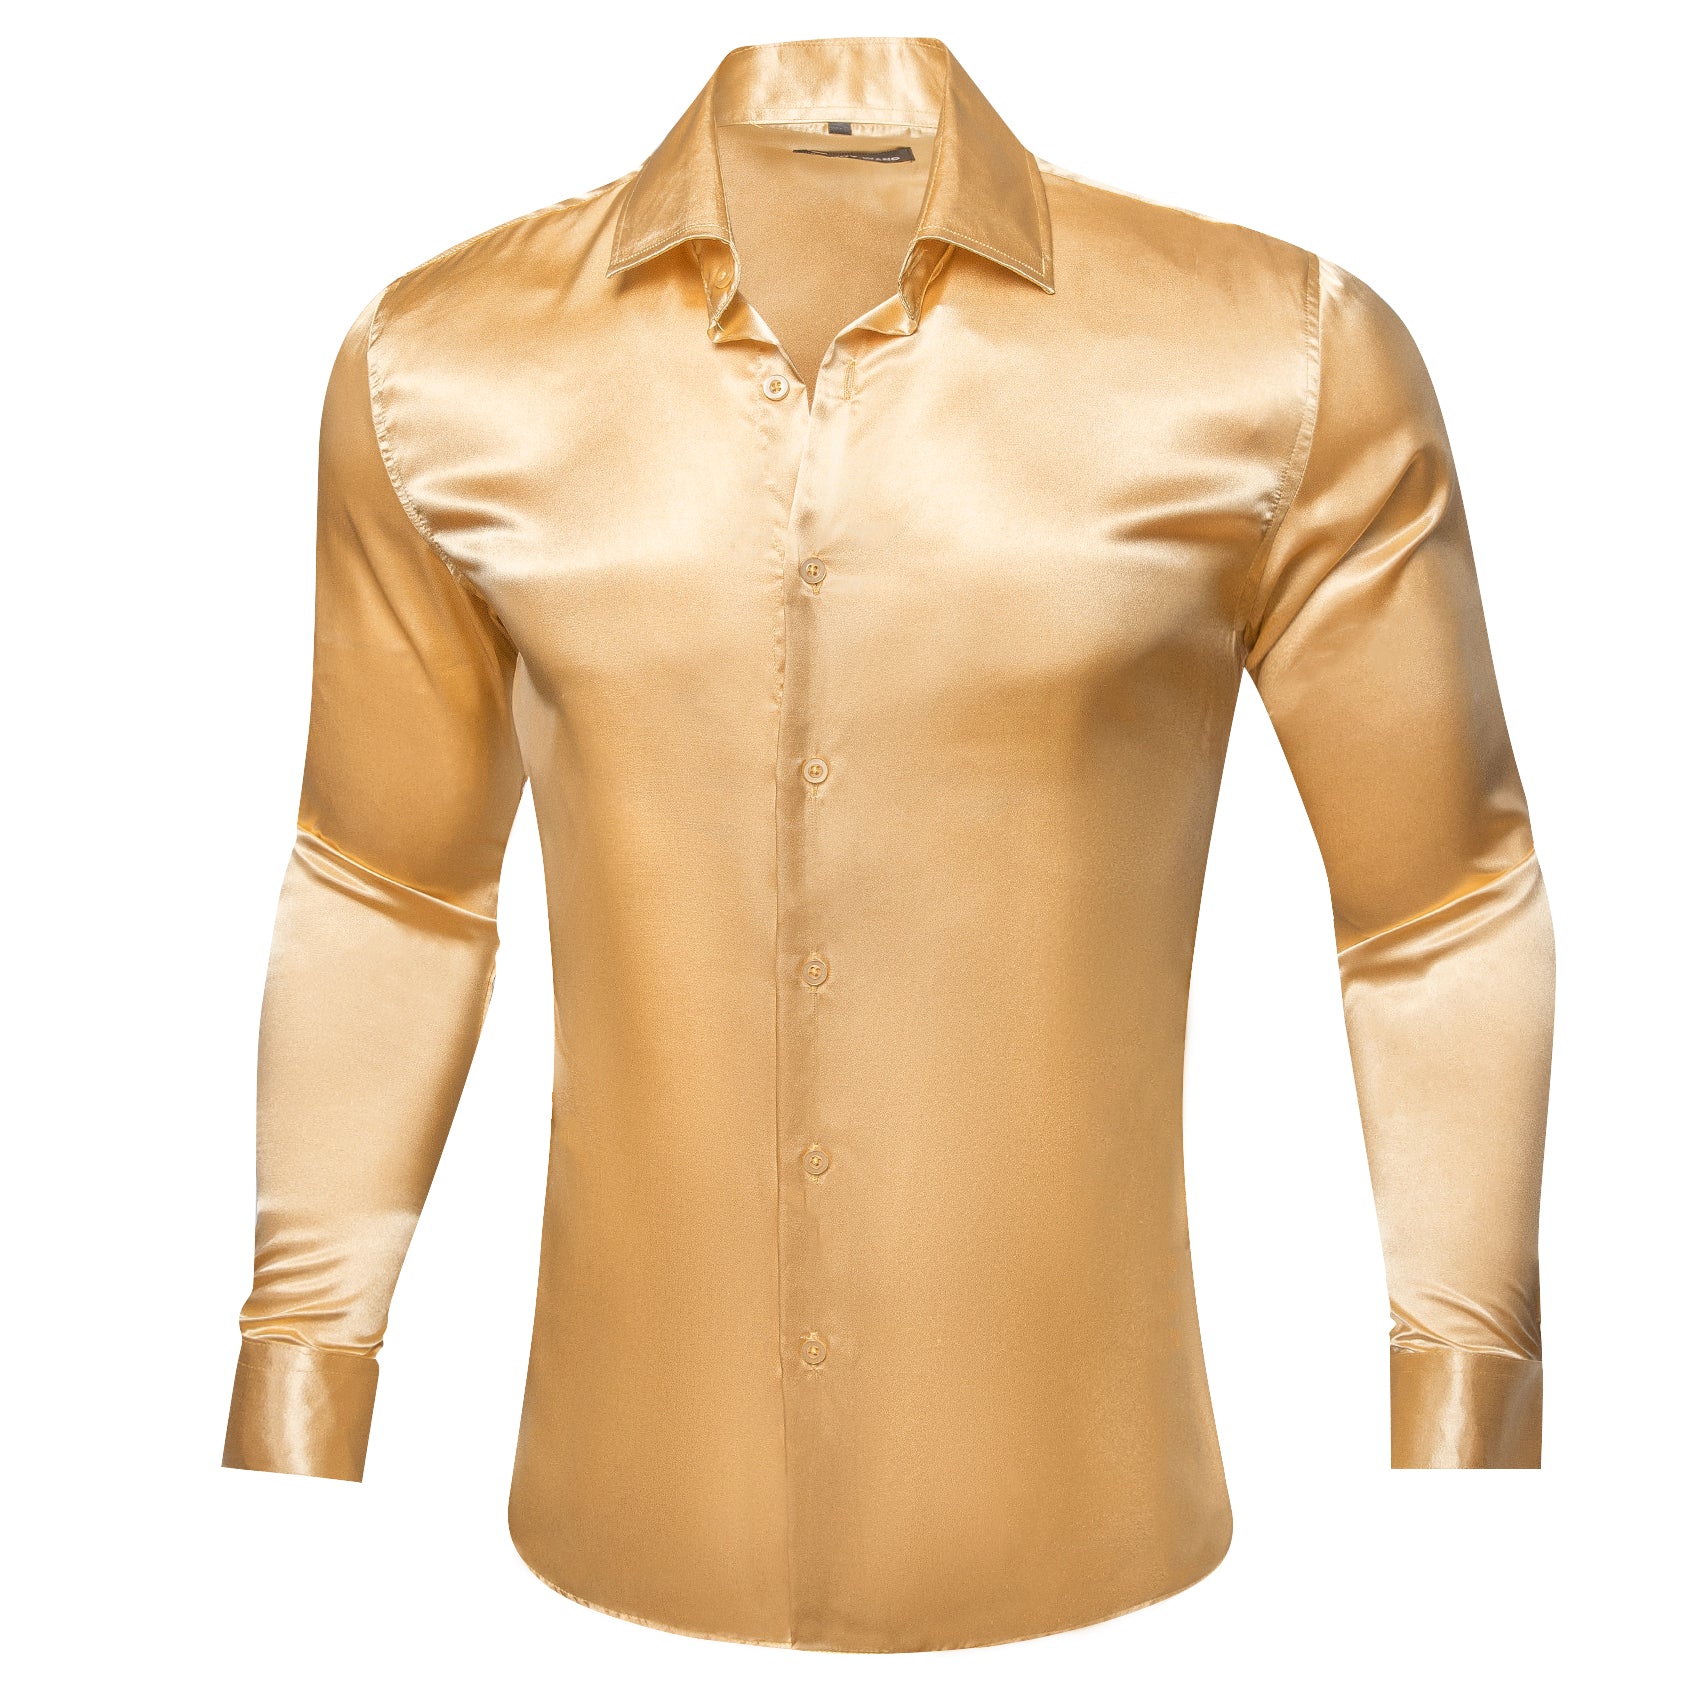 Barry.wang Goldenrod Solid Silk Shirt